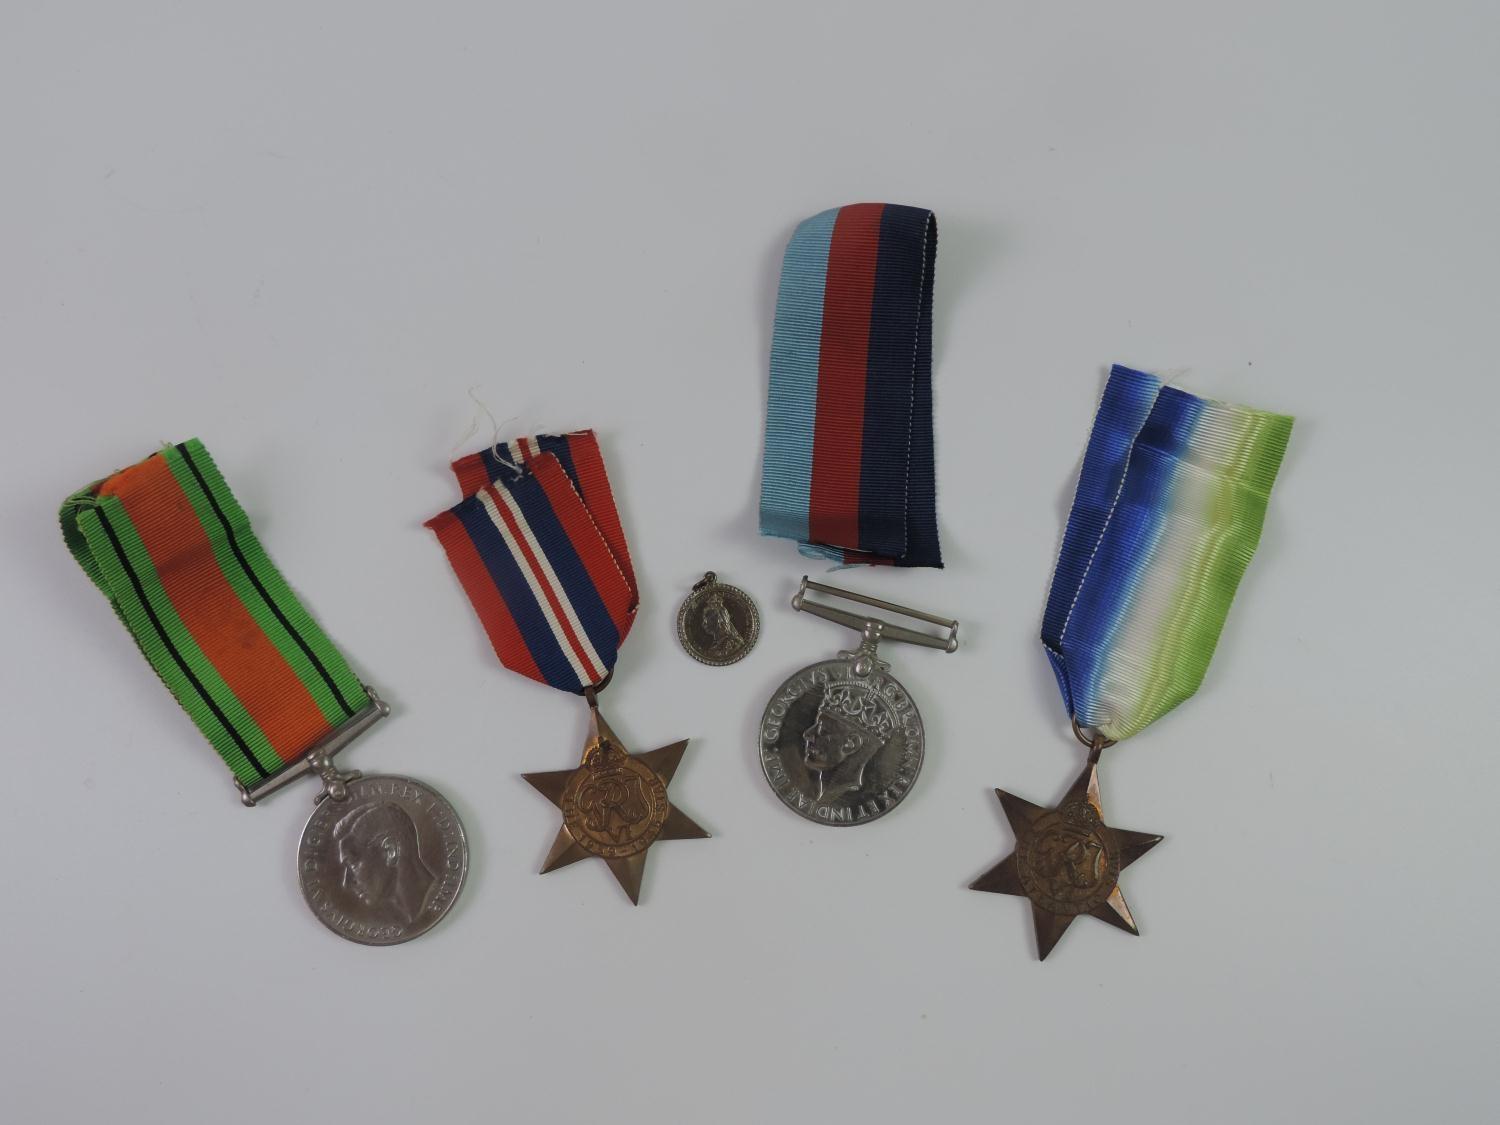 Second World War Medals